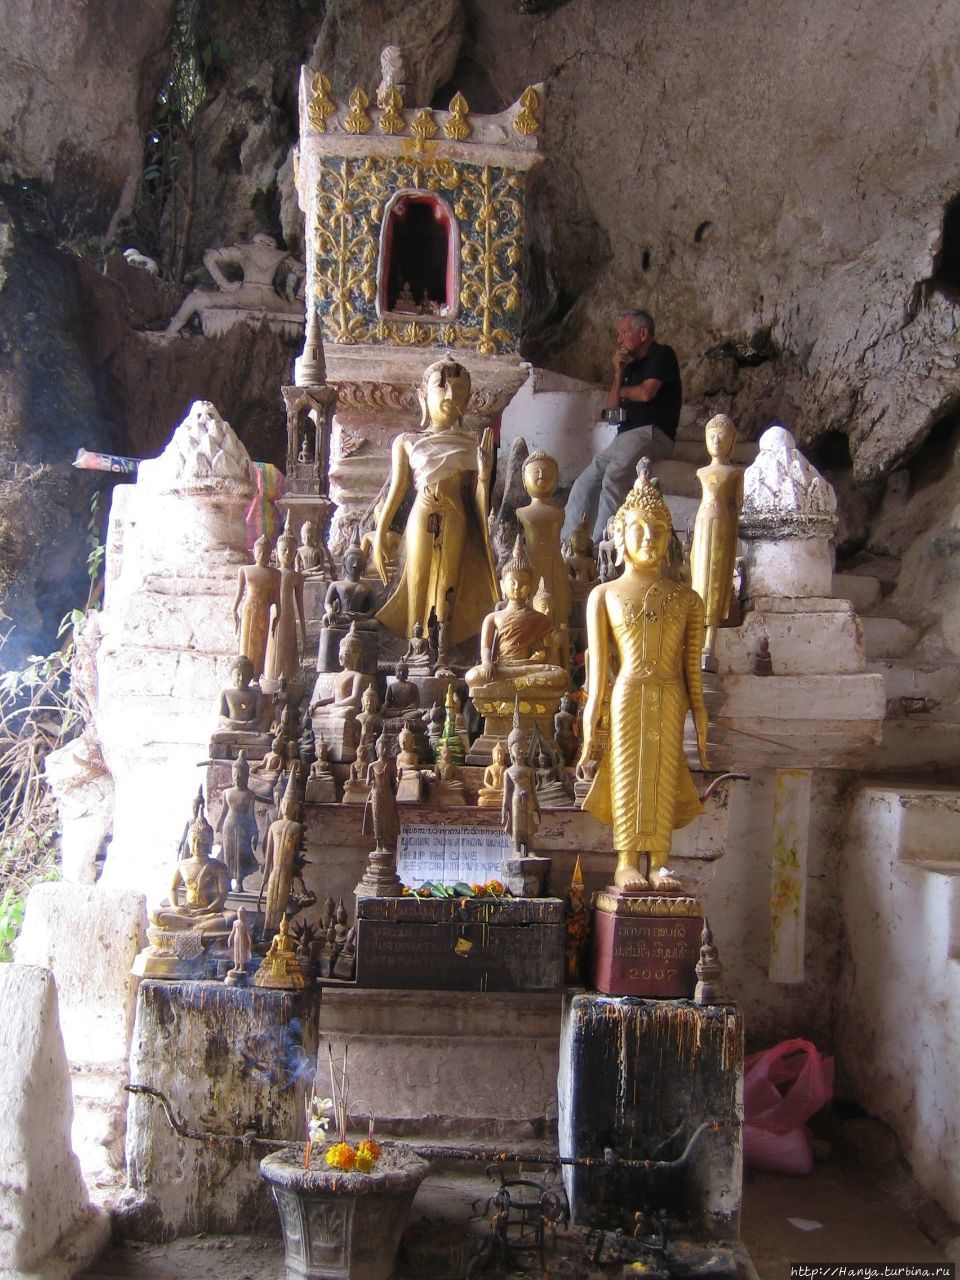 Нижняя пещера Пак-У Луанг-Прабанг, Лаос